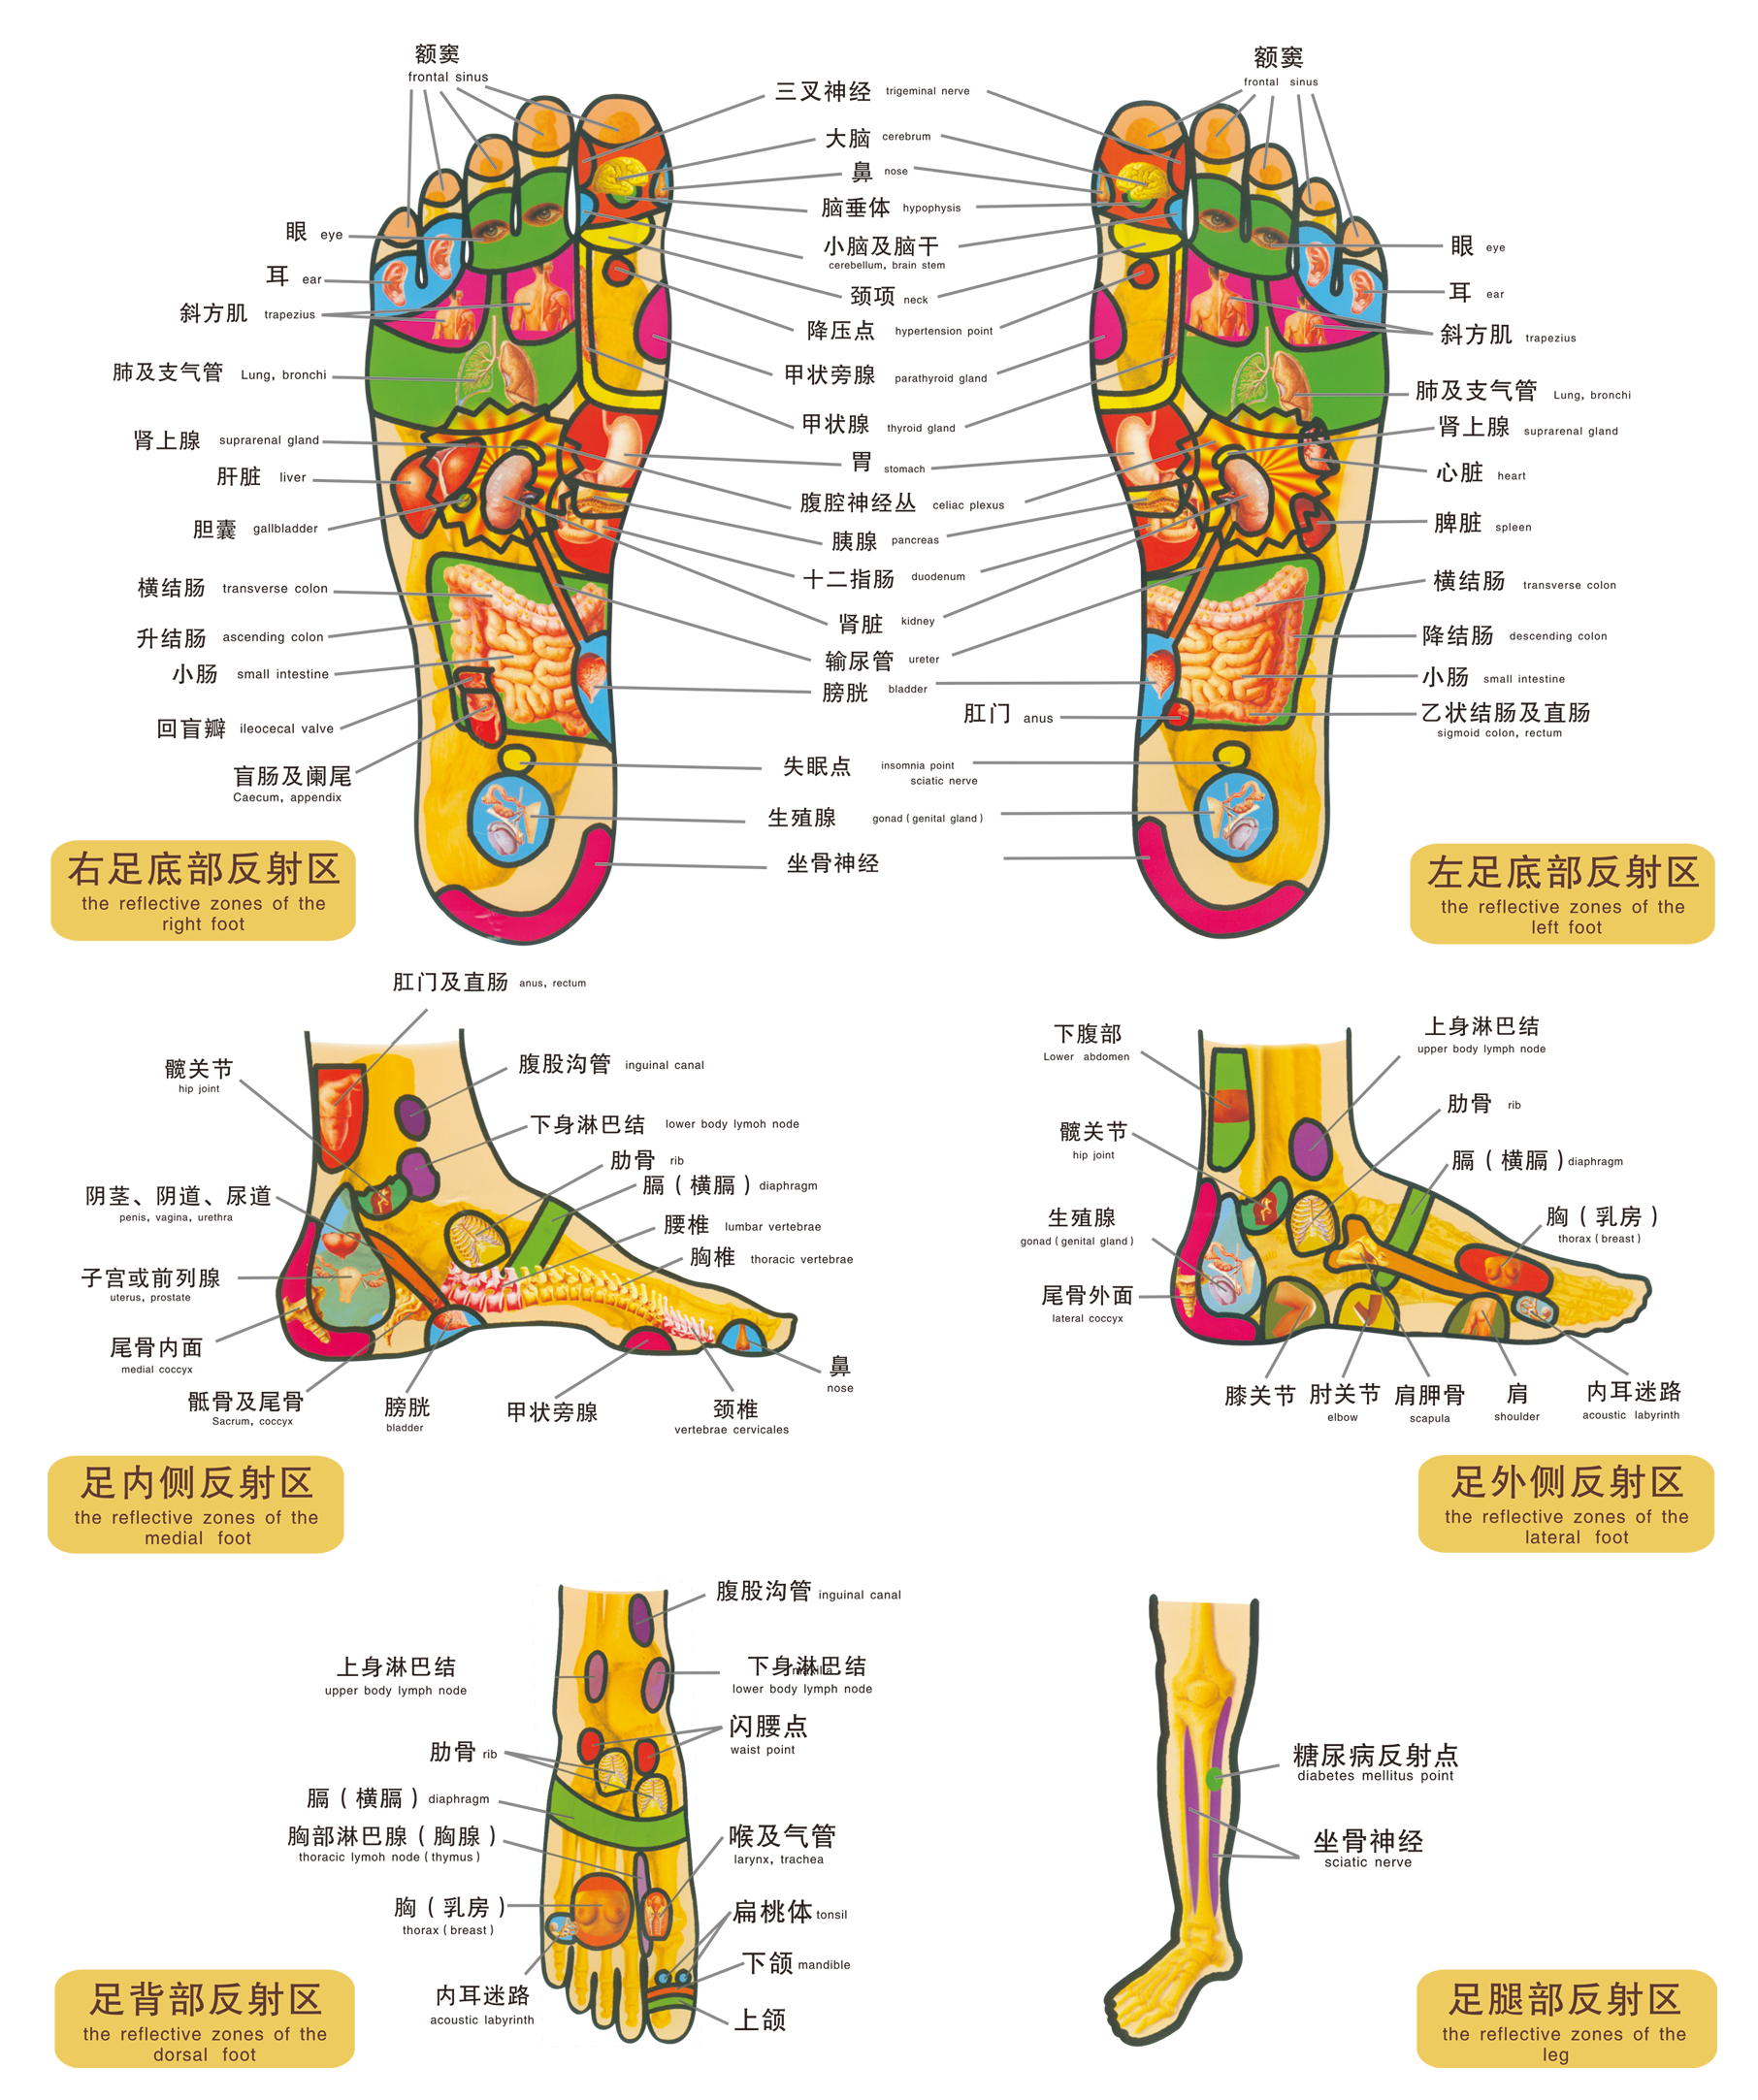 脚在人体最底部,血液中的尿酸晶等有害物质沉积在脚底,不利健康